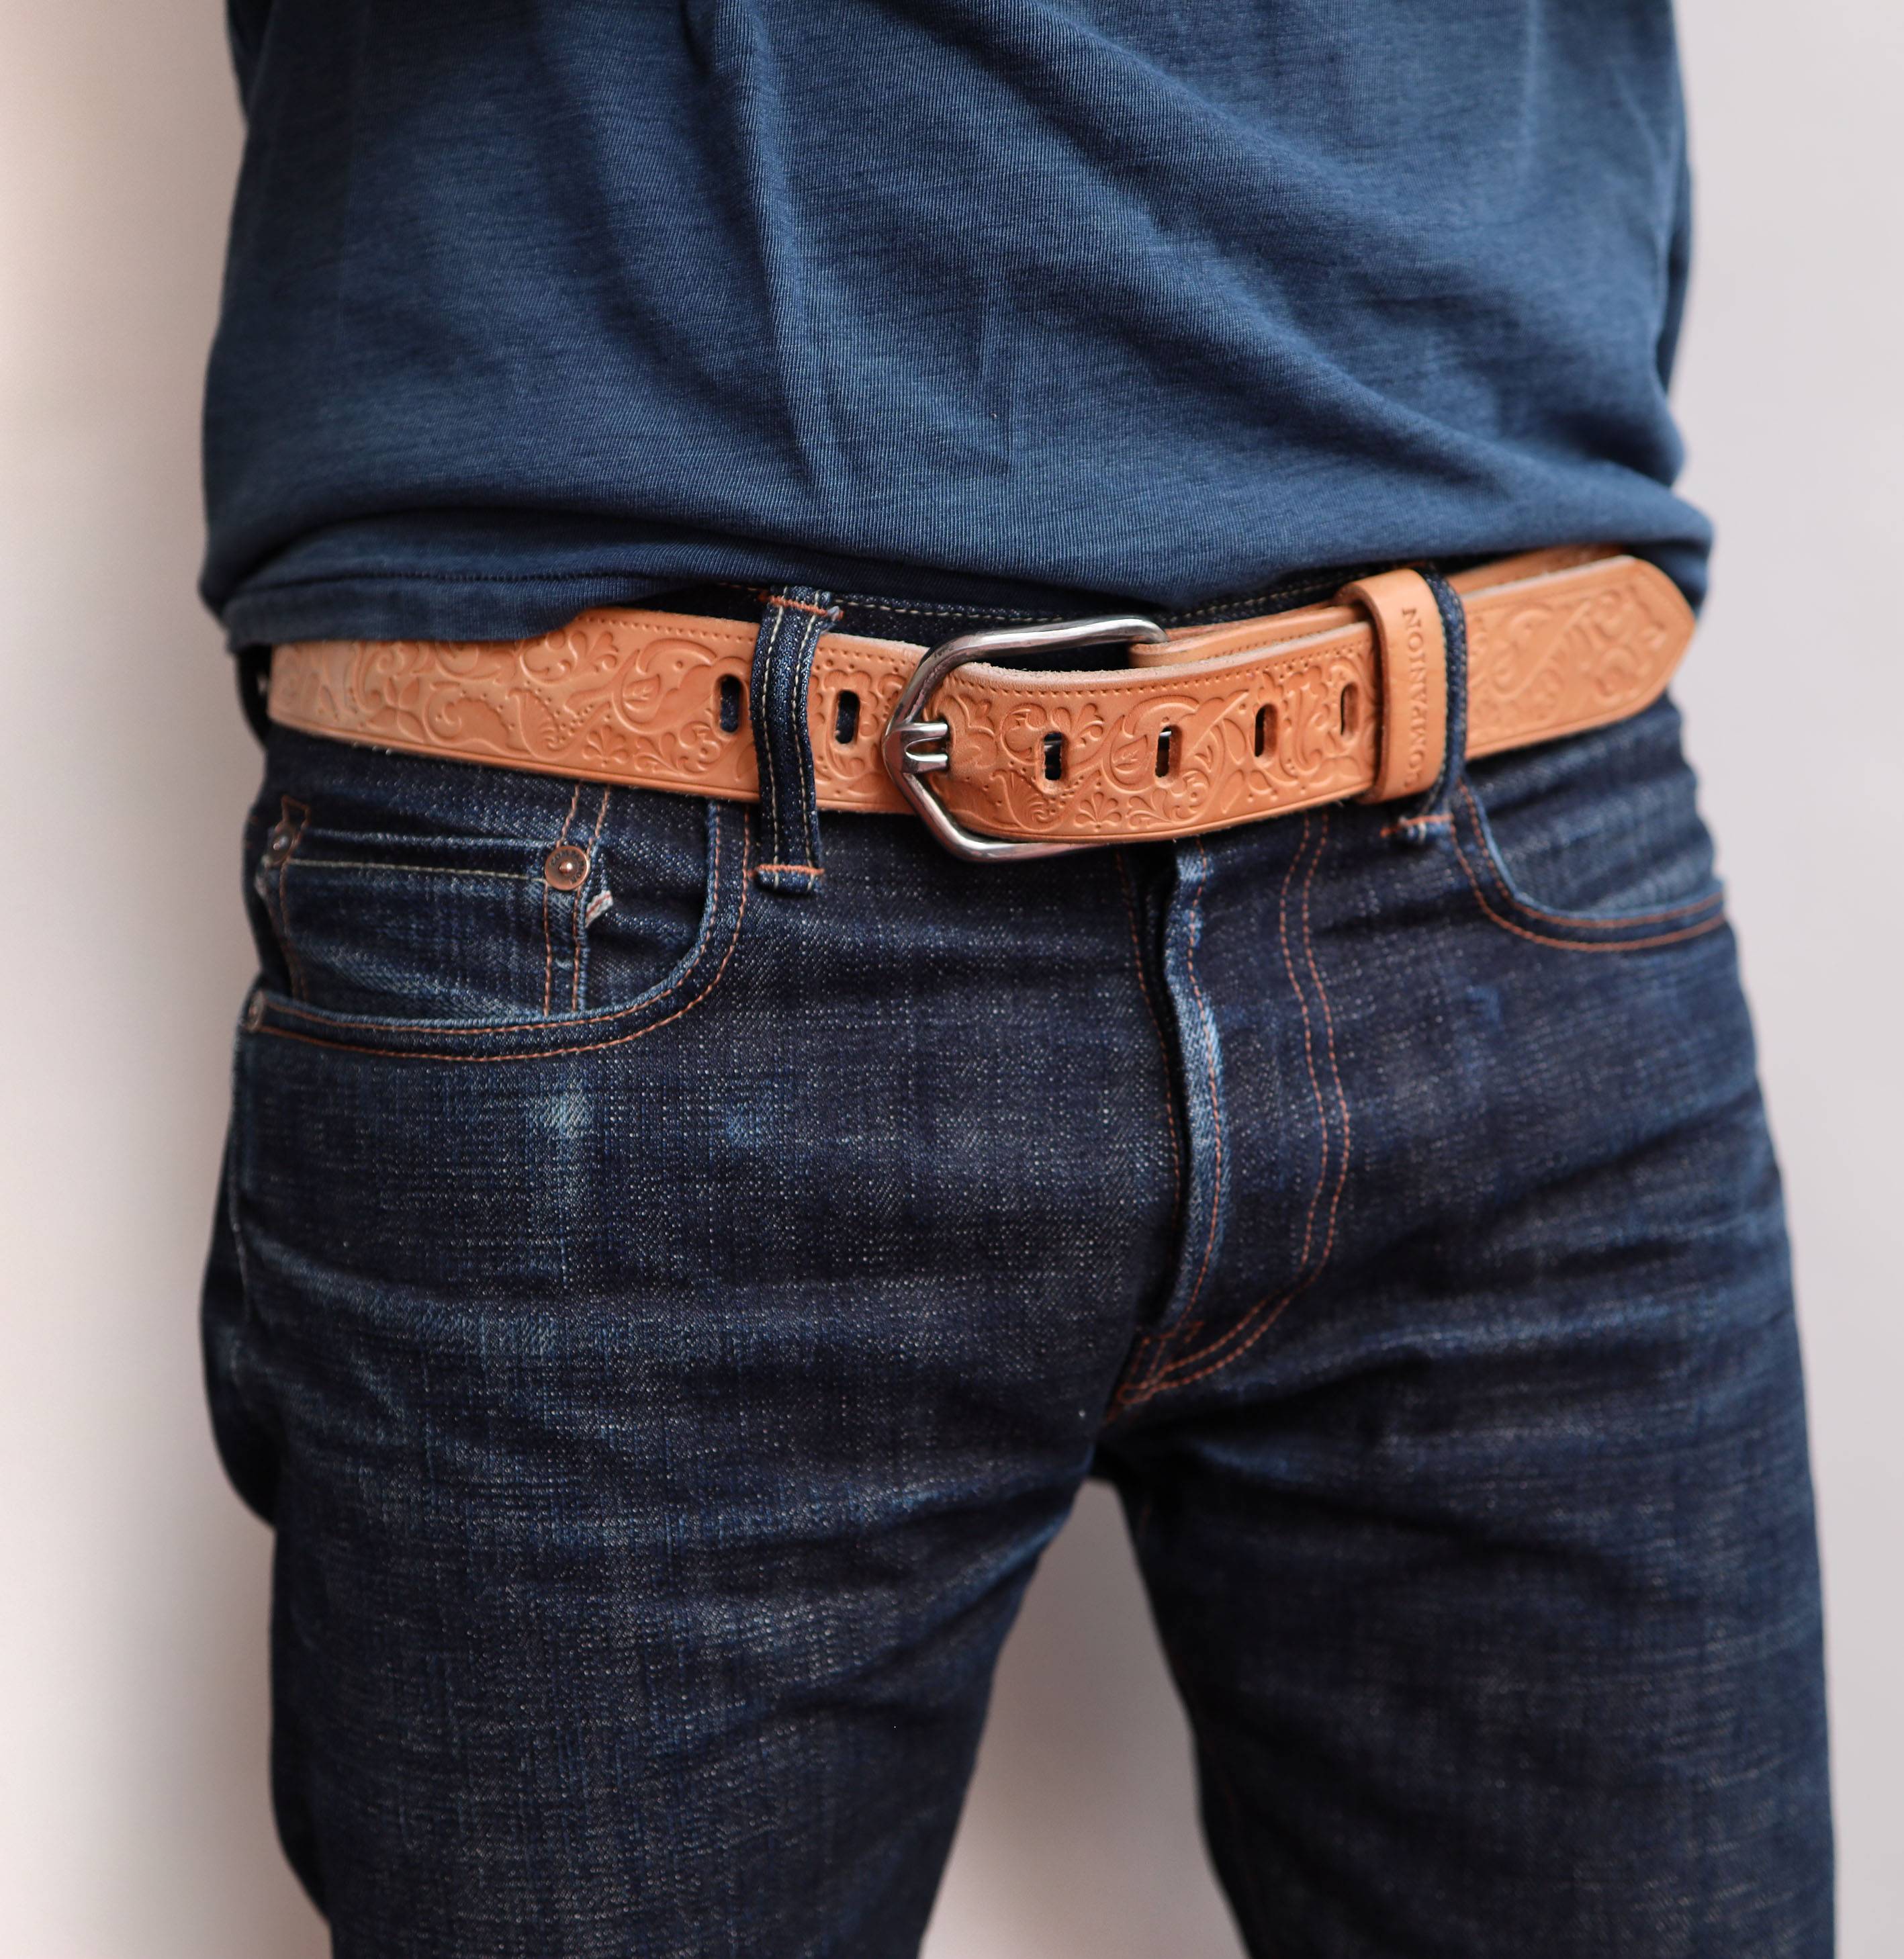 Модные мужские ремни для джинсов - про джинсы